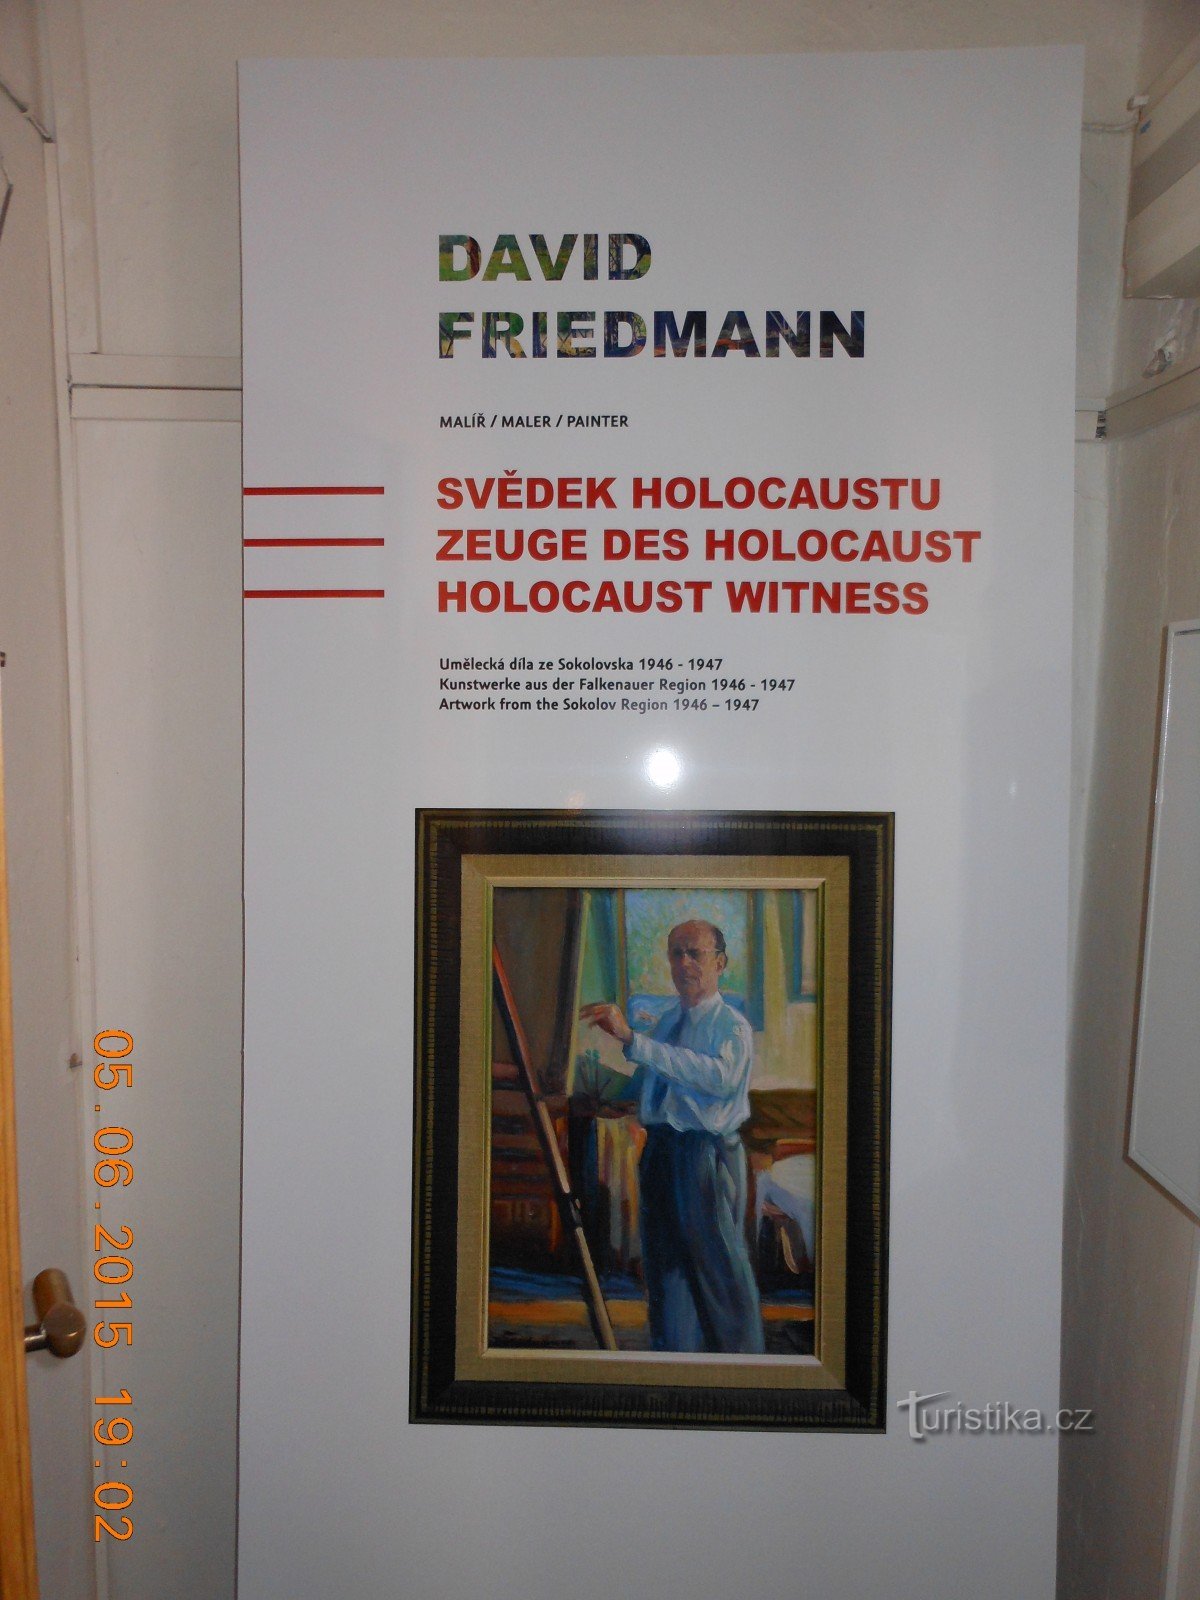 展览大卫弗里德曼 - 索科洛夫博物馆